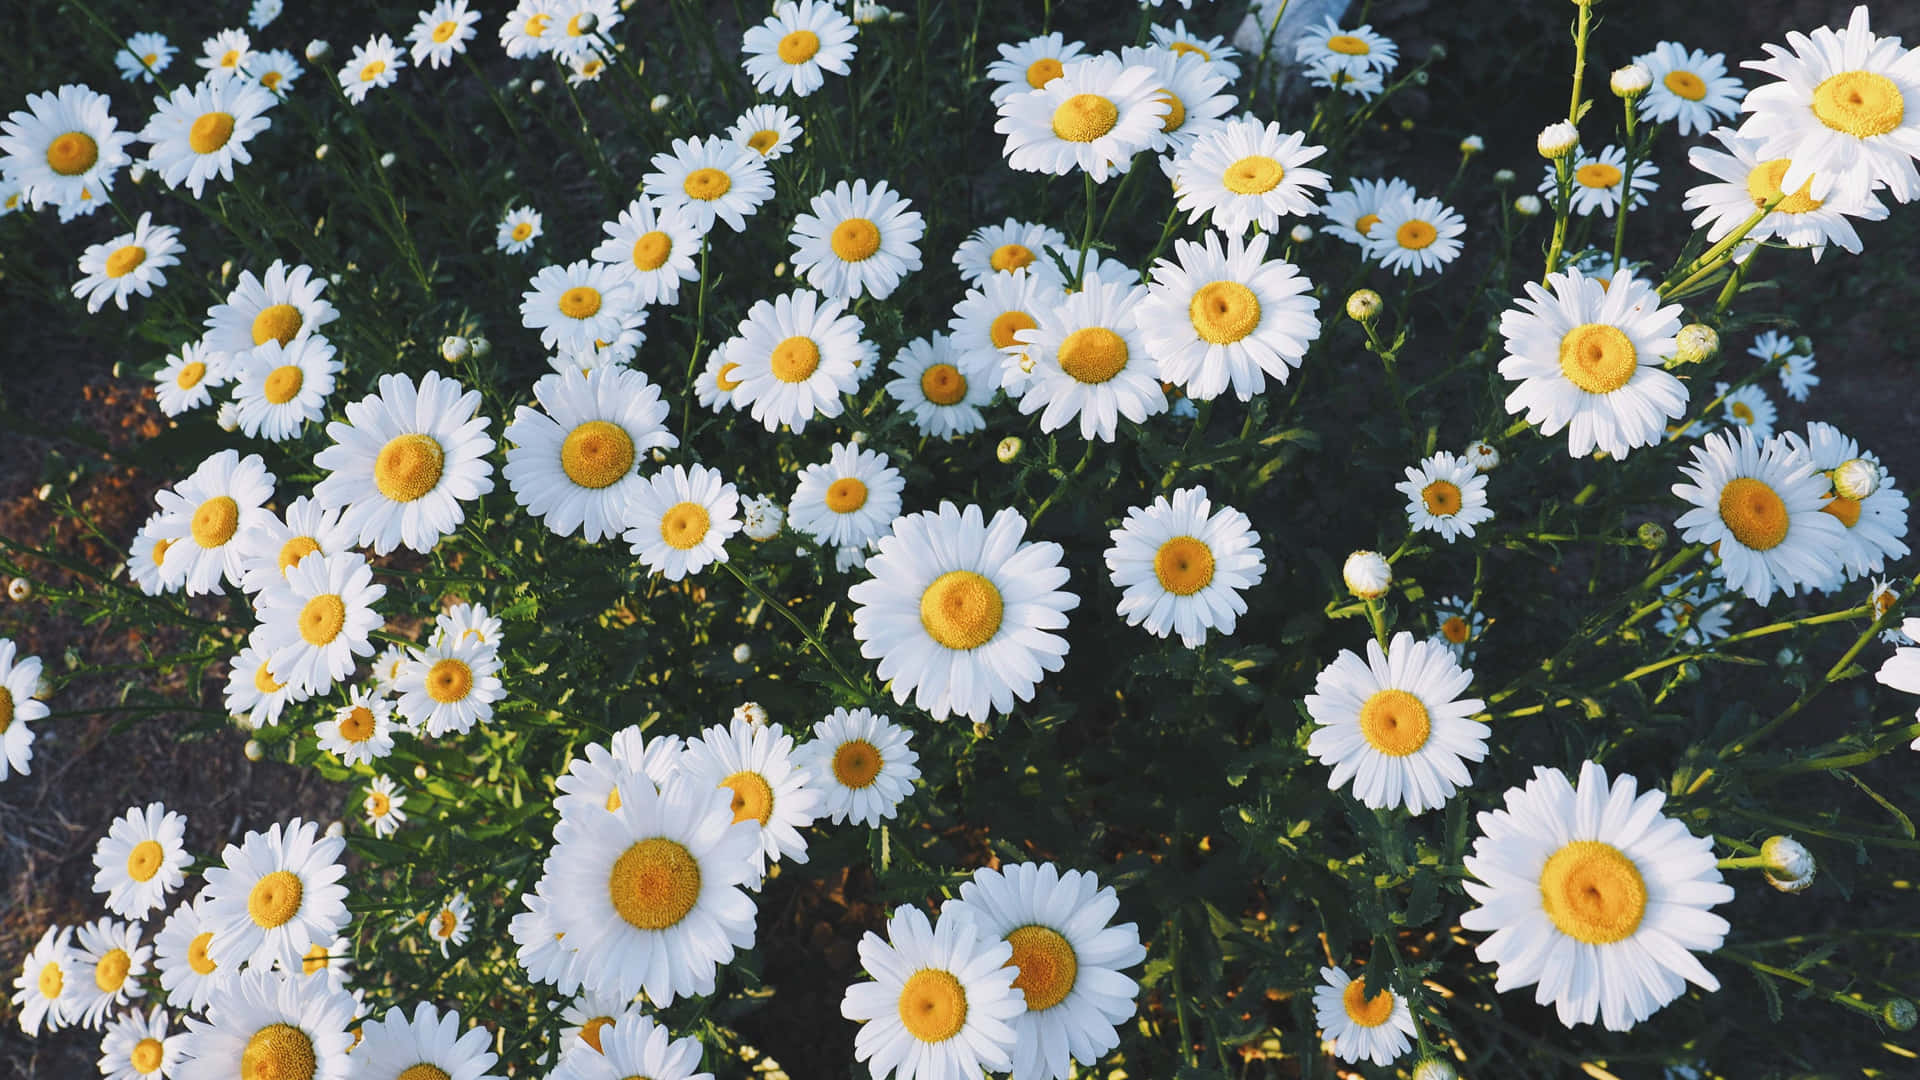 Aesthetic Daisy Flower Field Wallpaper